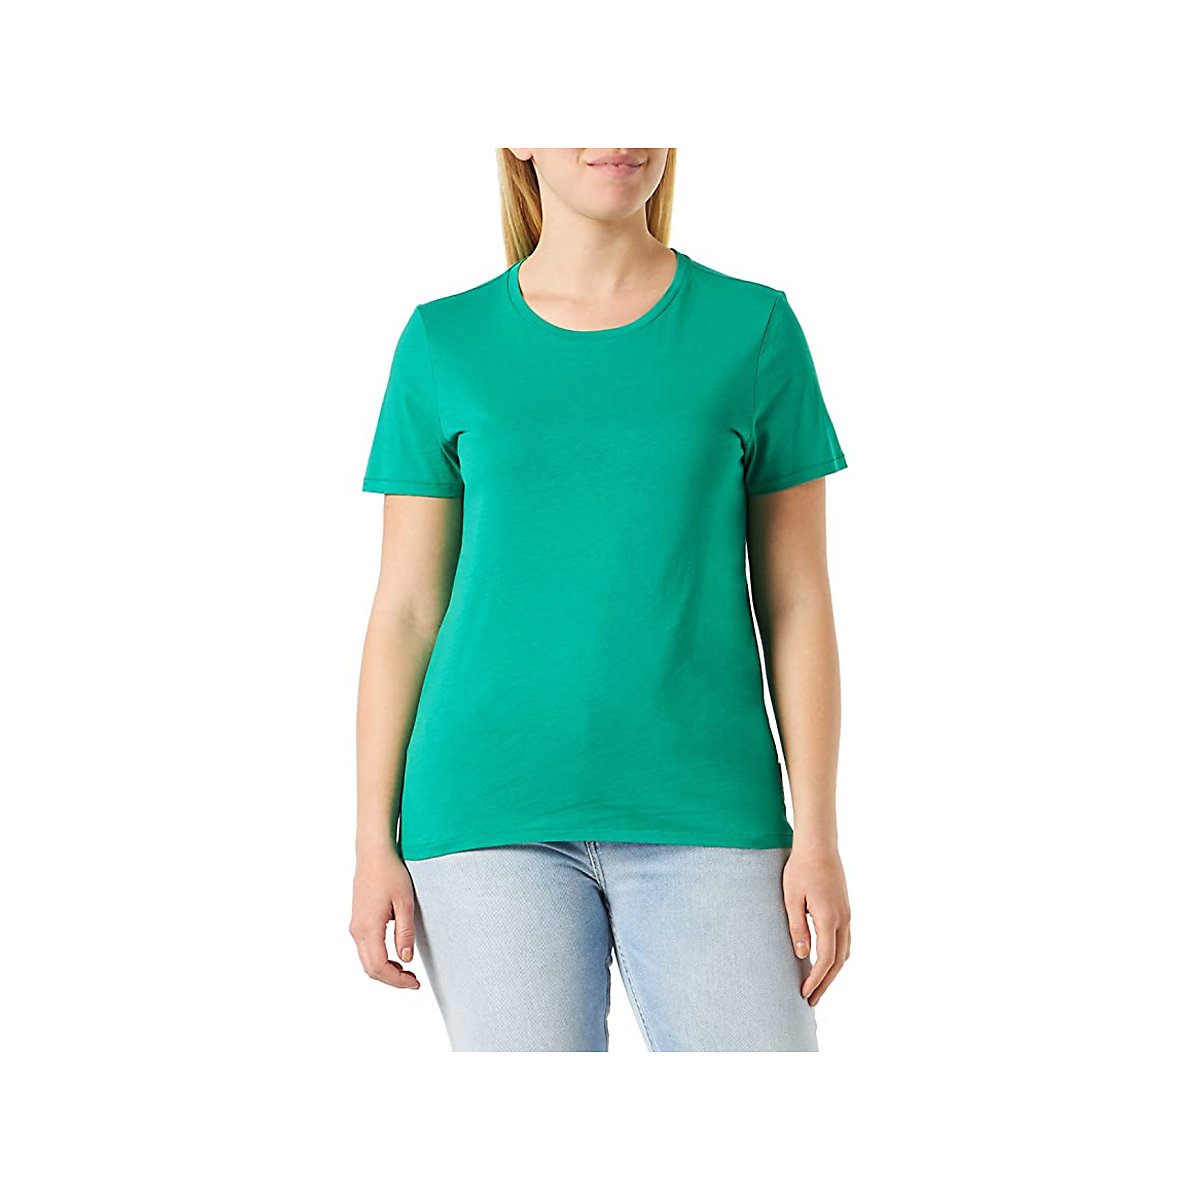 Marc O'Polo T-Shirt für Mädchen grün